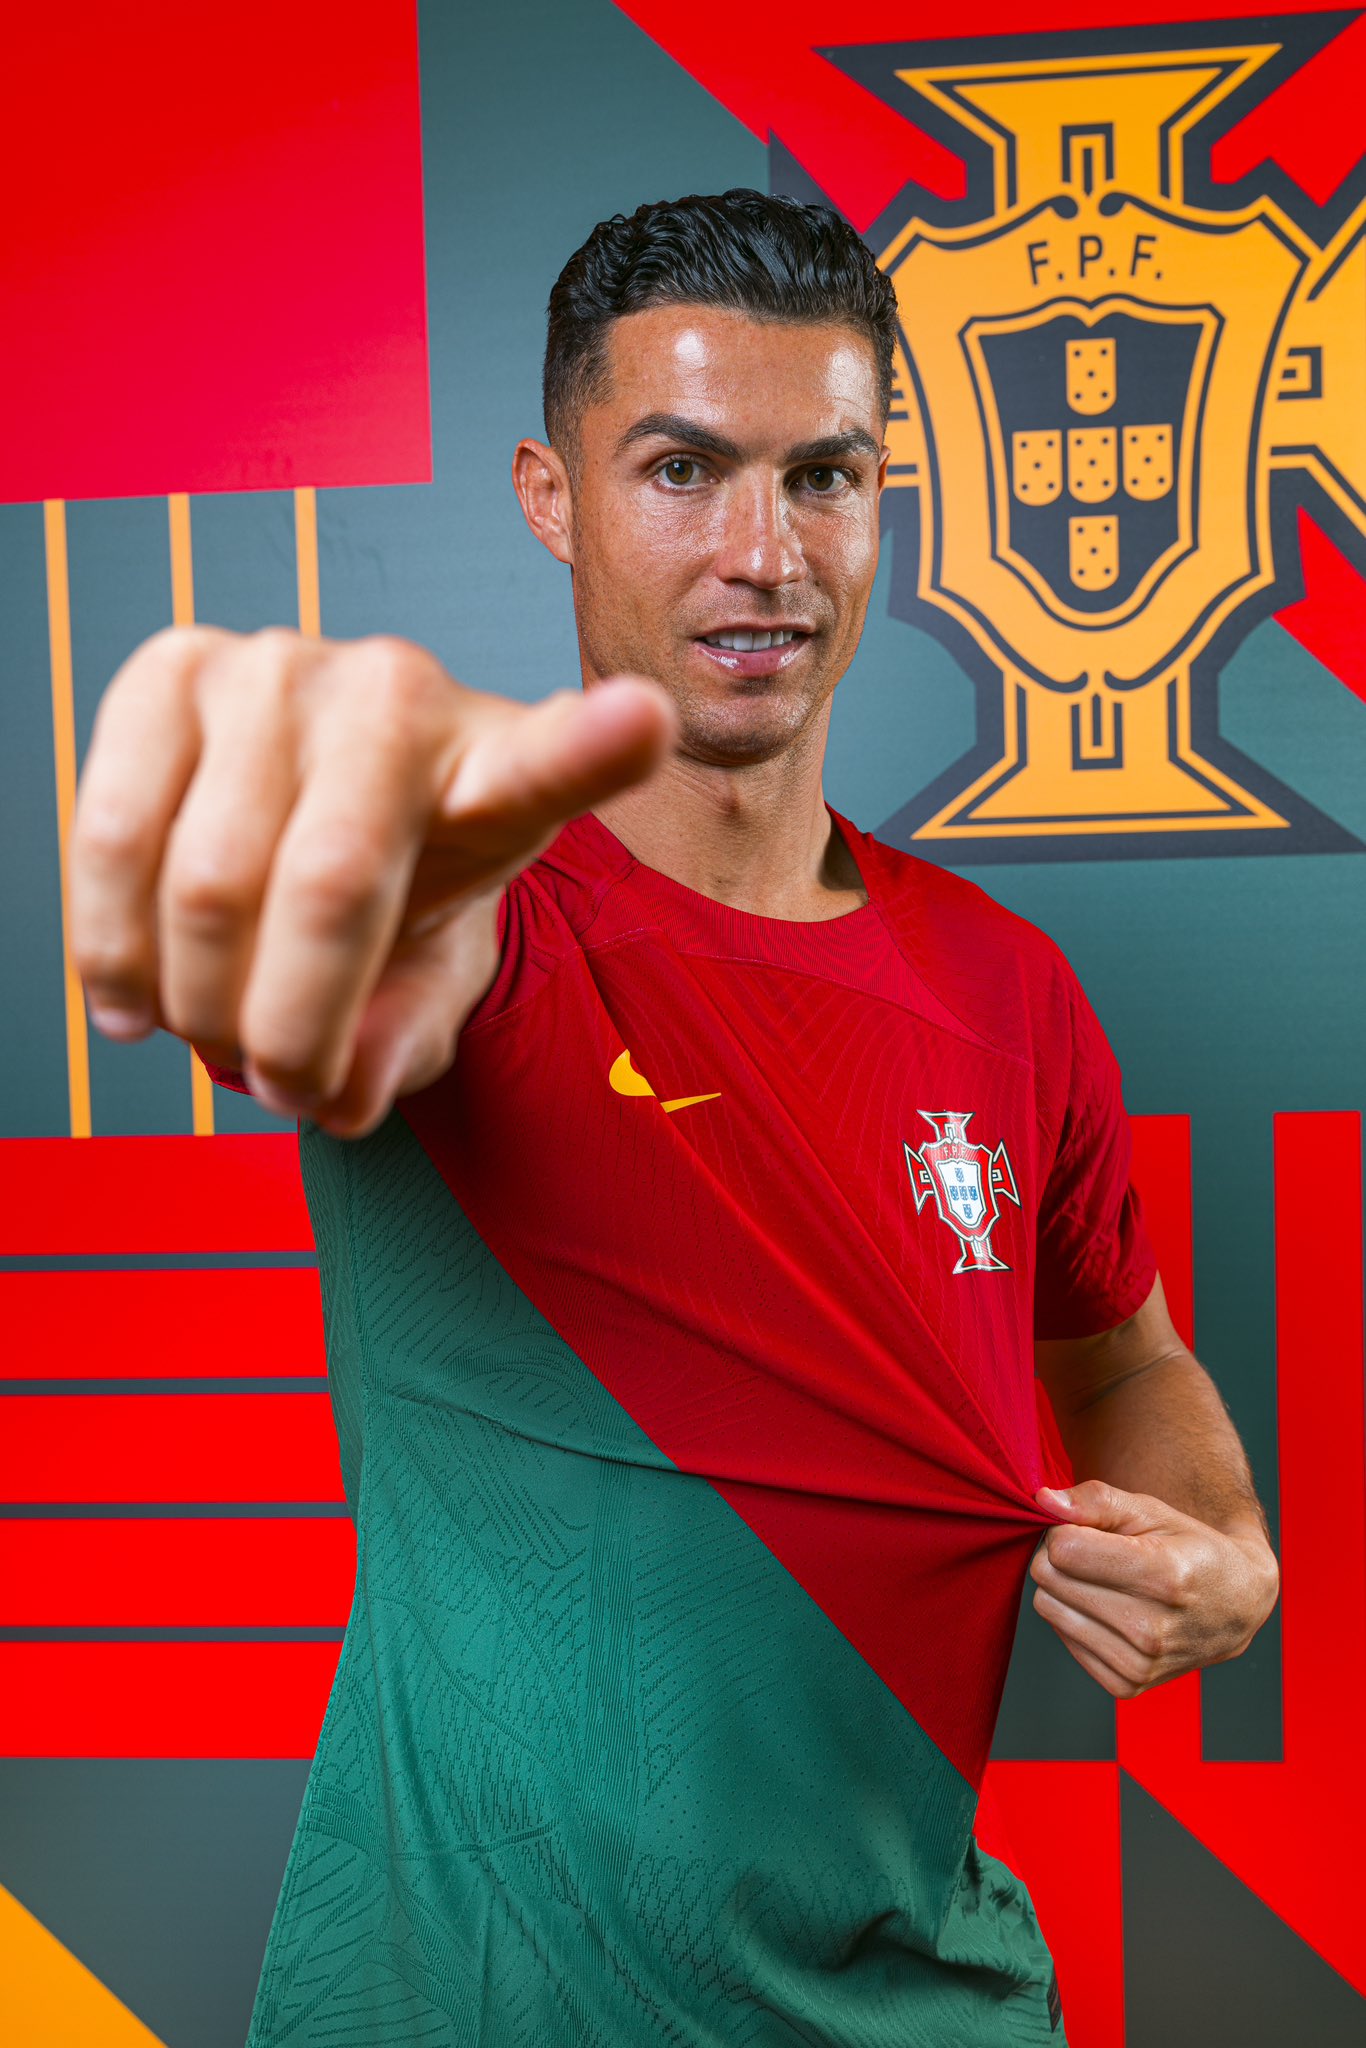 Cristiano Ronaldo, The No. 7 For The Portugal National Team